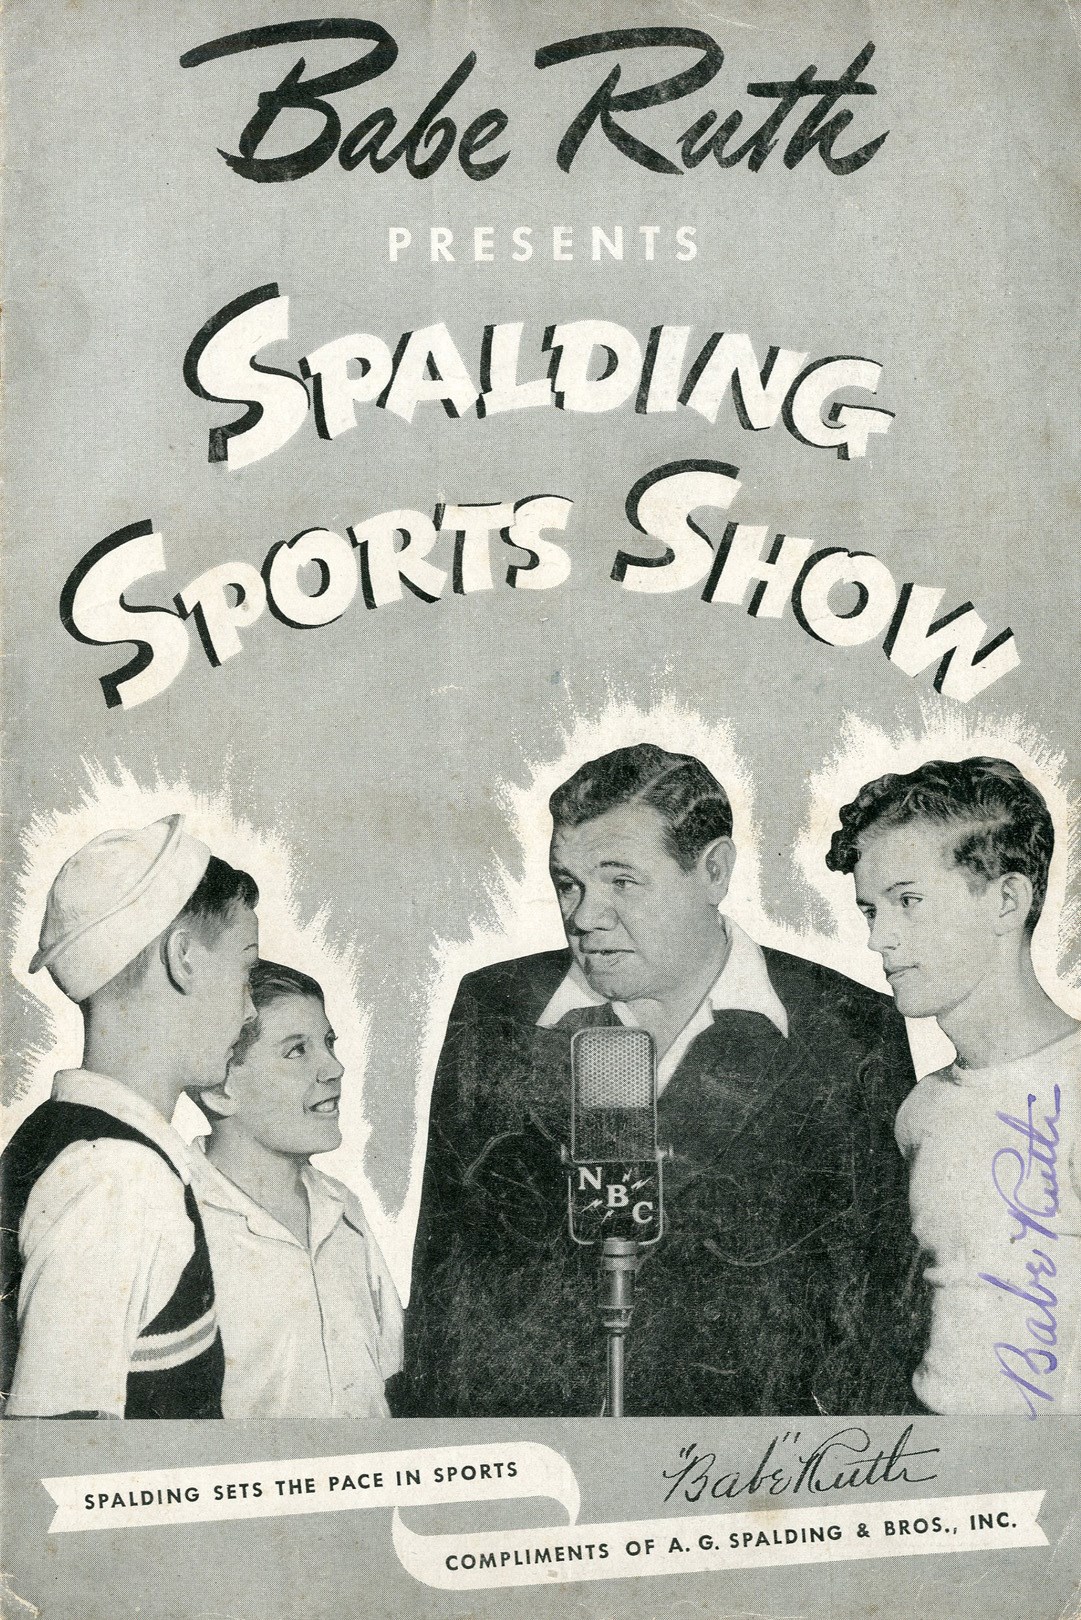 1944 Babe Ruth Signed "Spalding Sports Show" Radio Program (PSA)